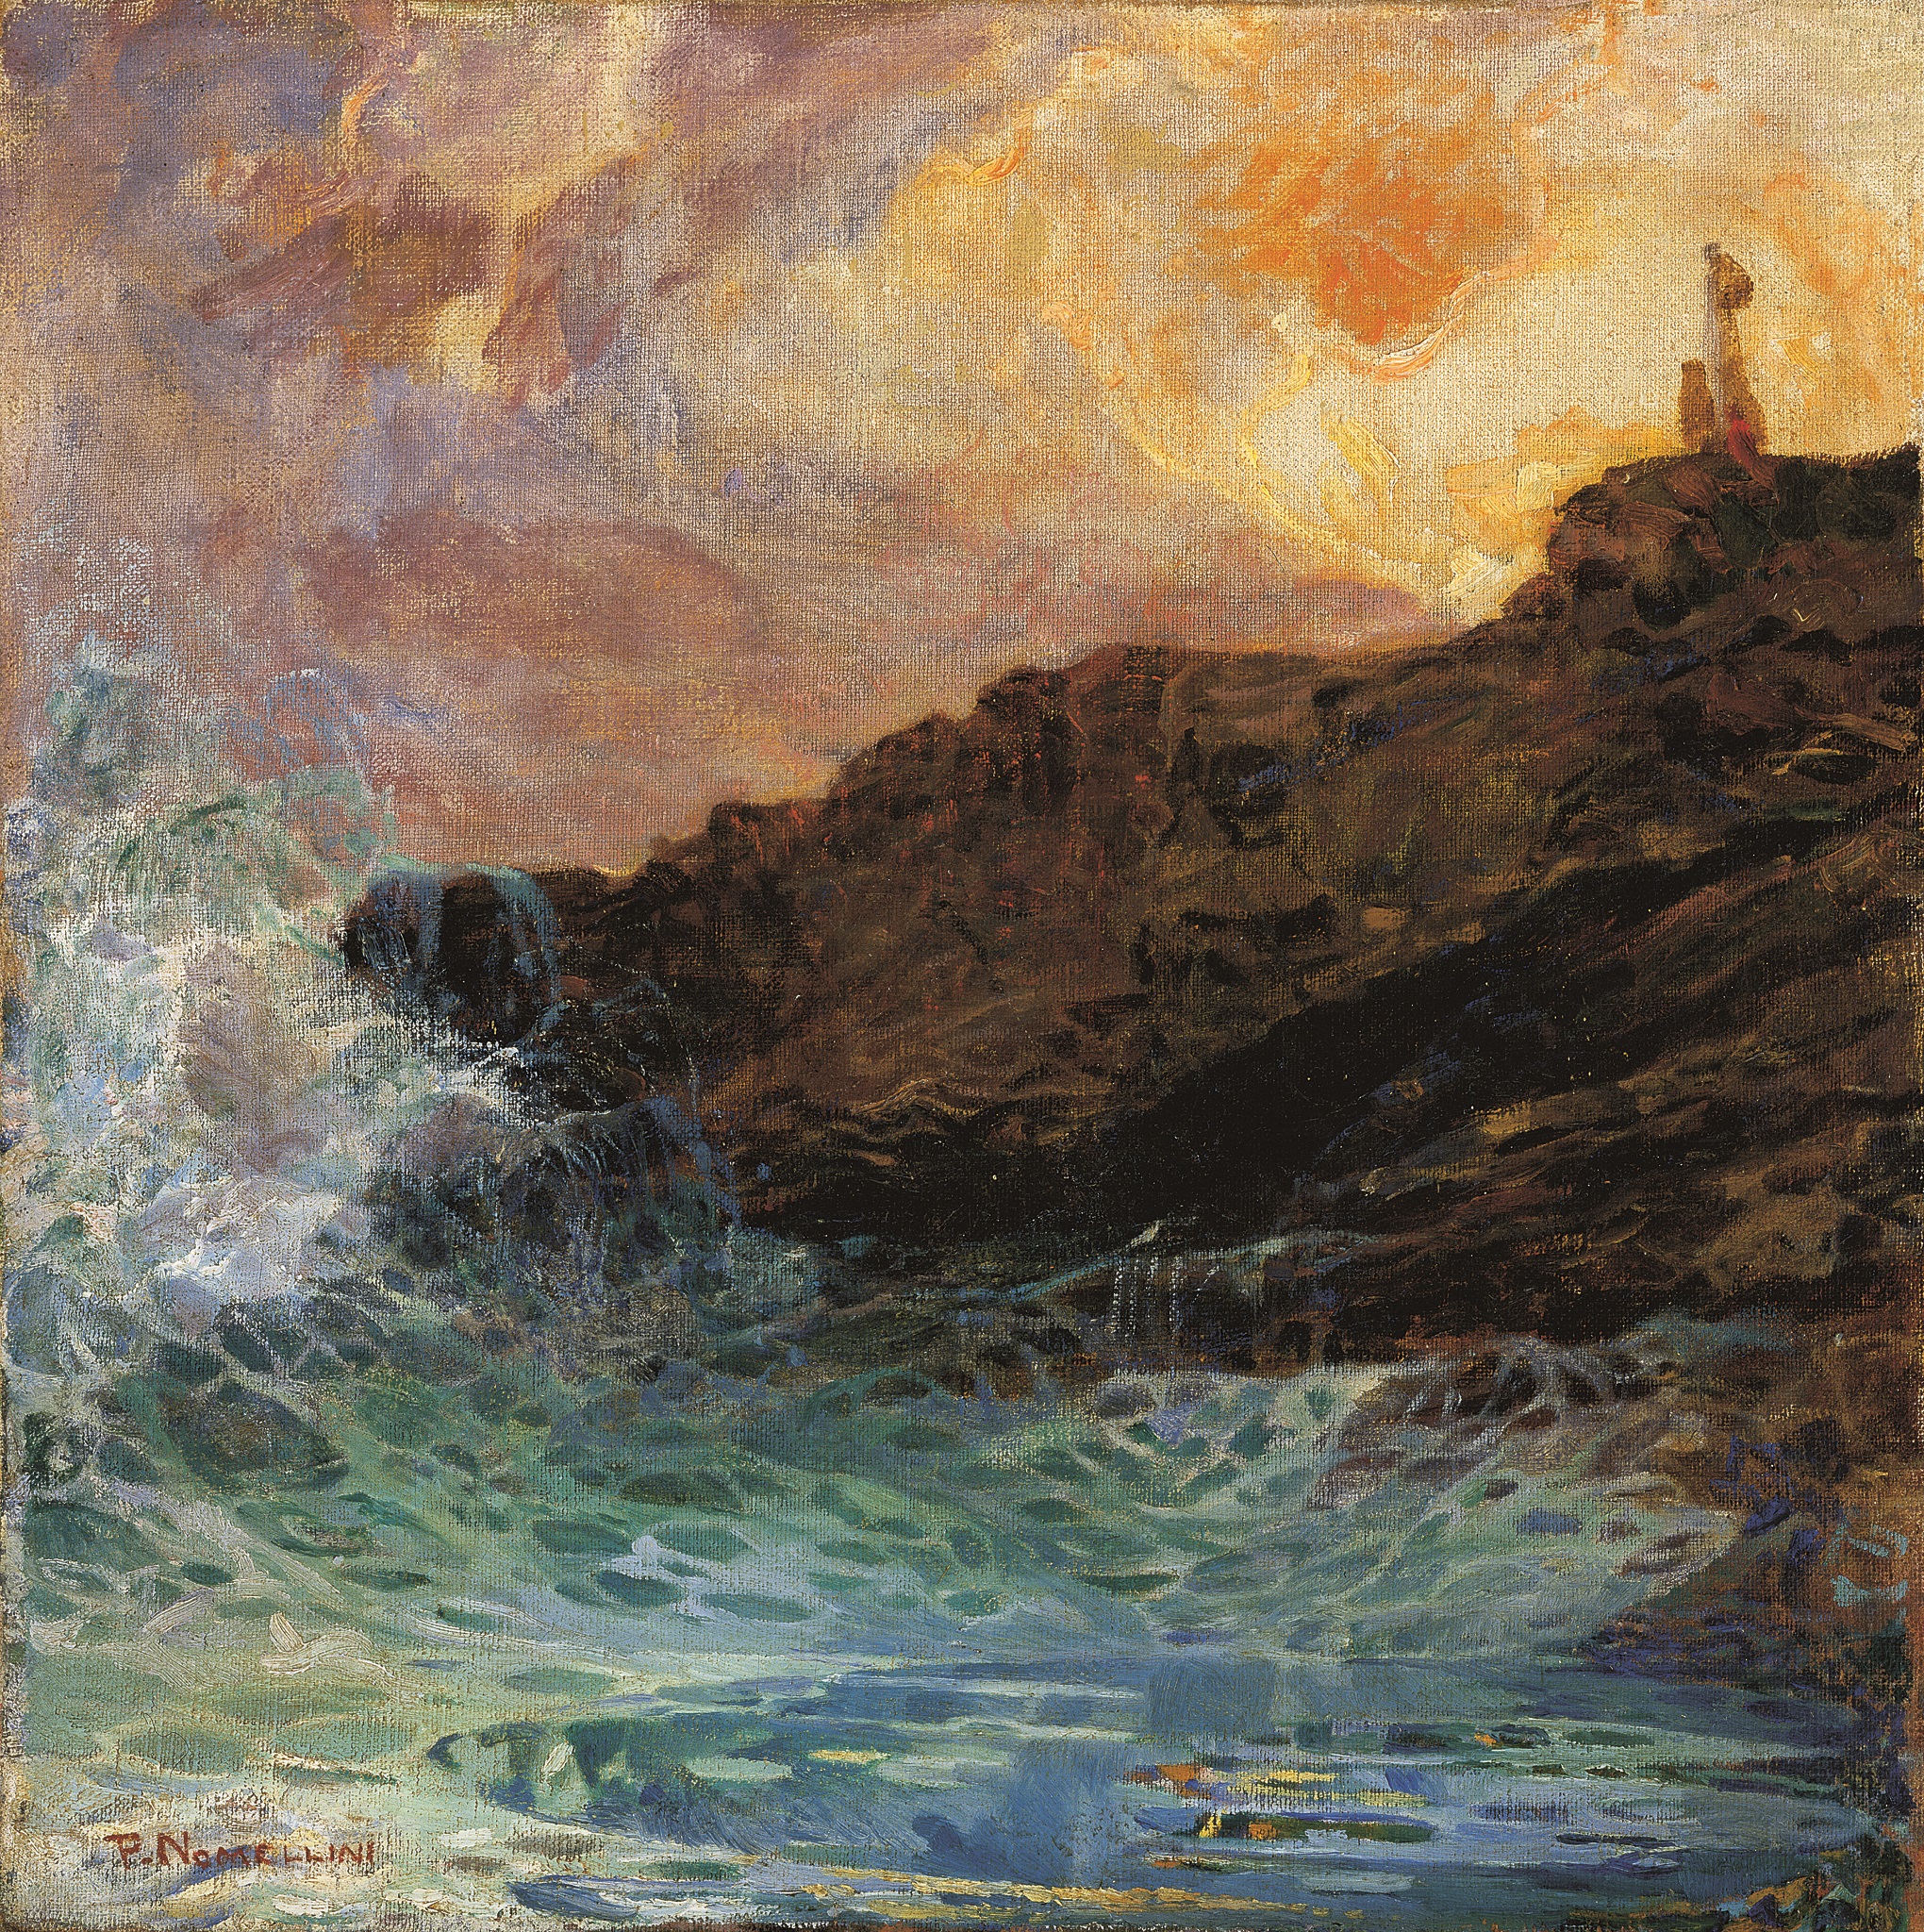 Plinio Nomellini "The cliff at Quarto"